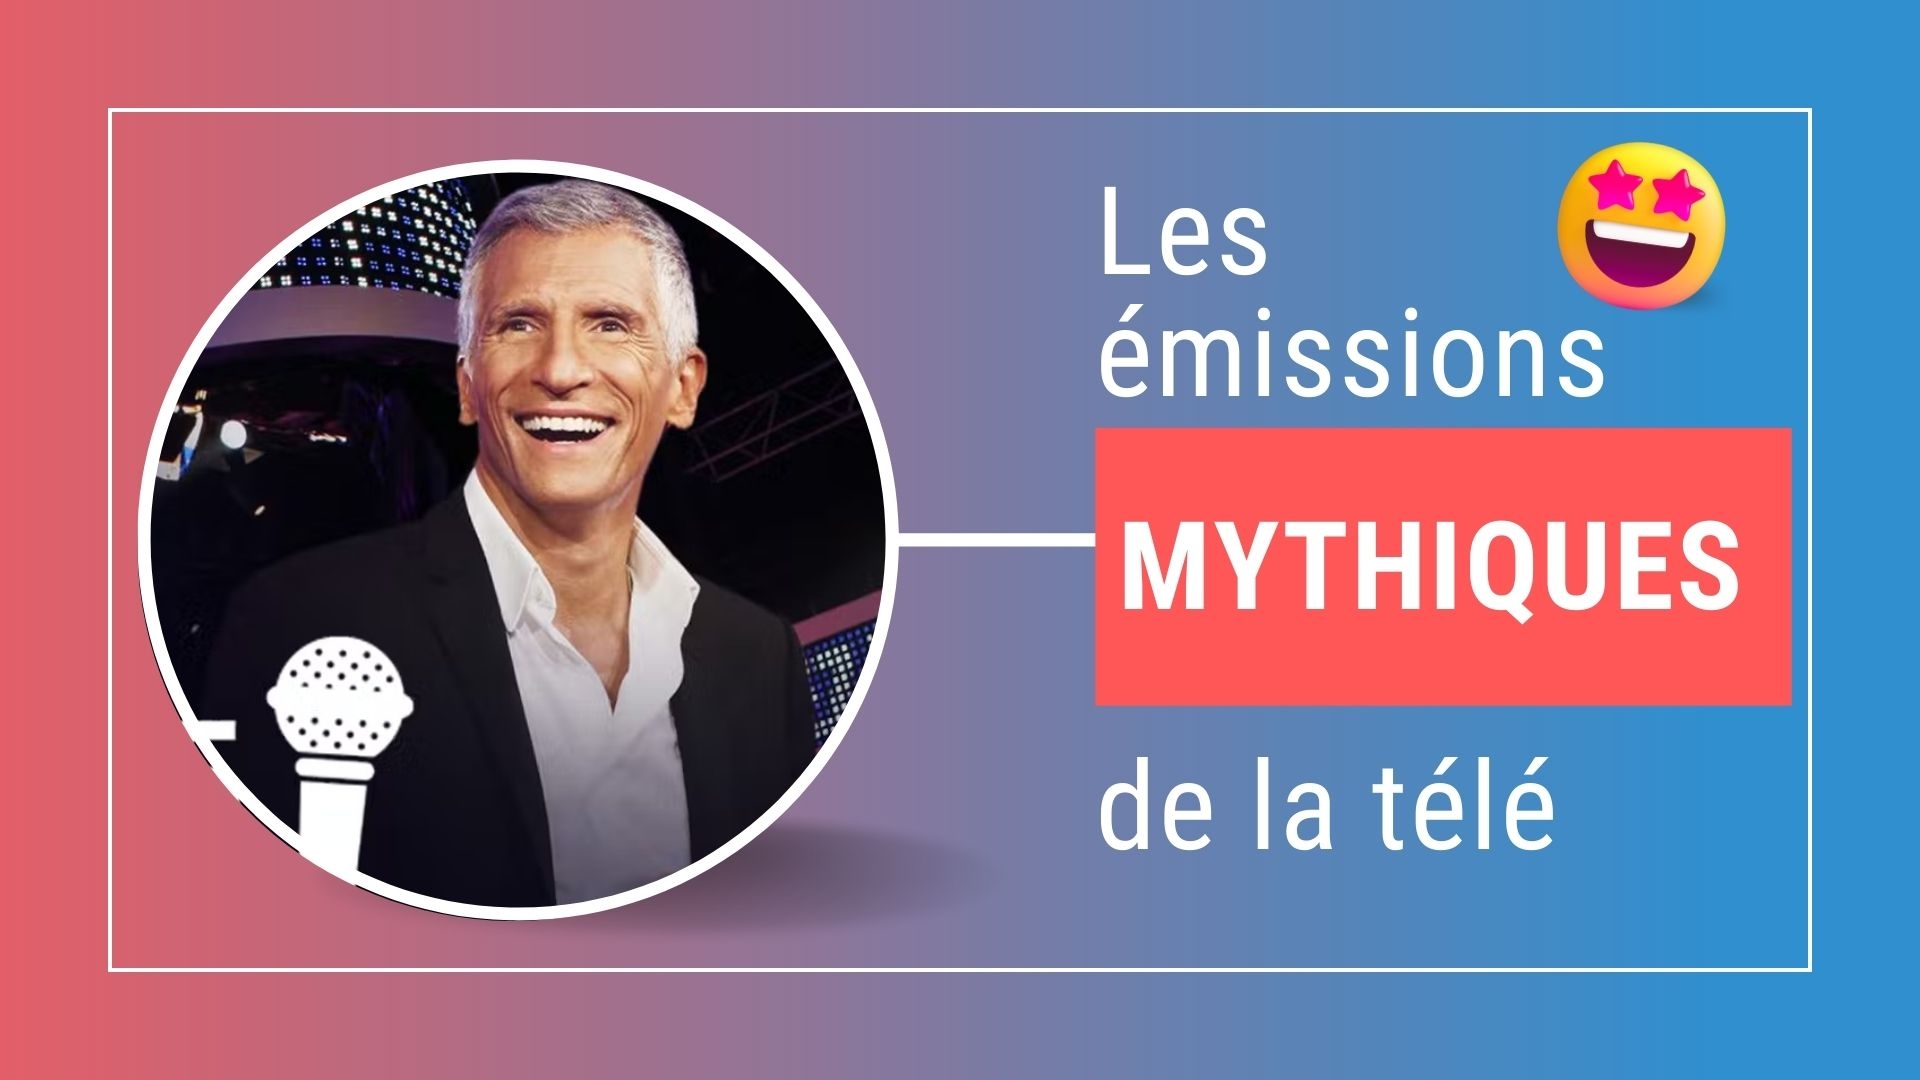 Les émissions mythiques de la télévision française